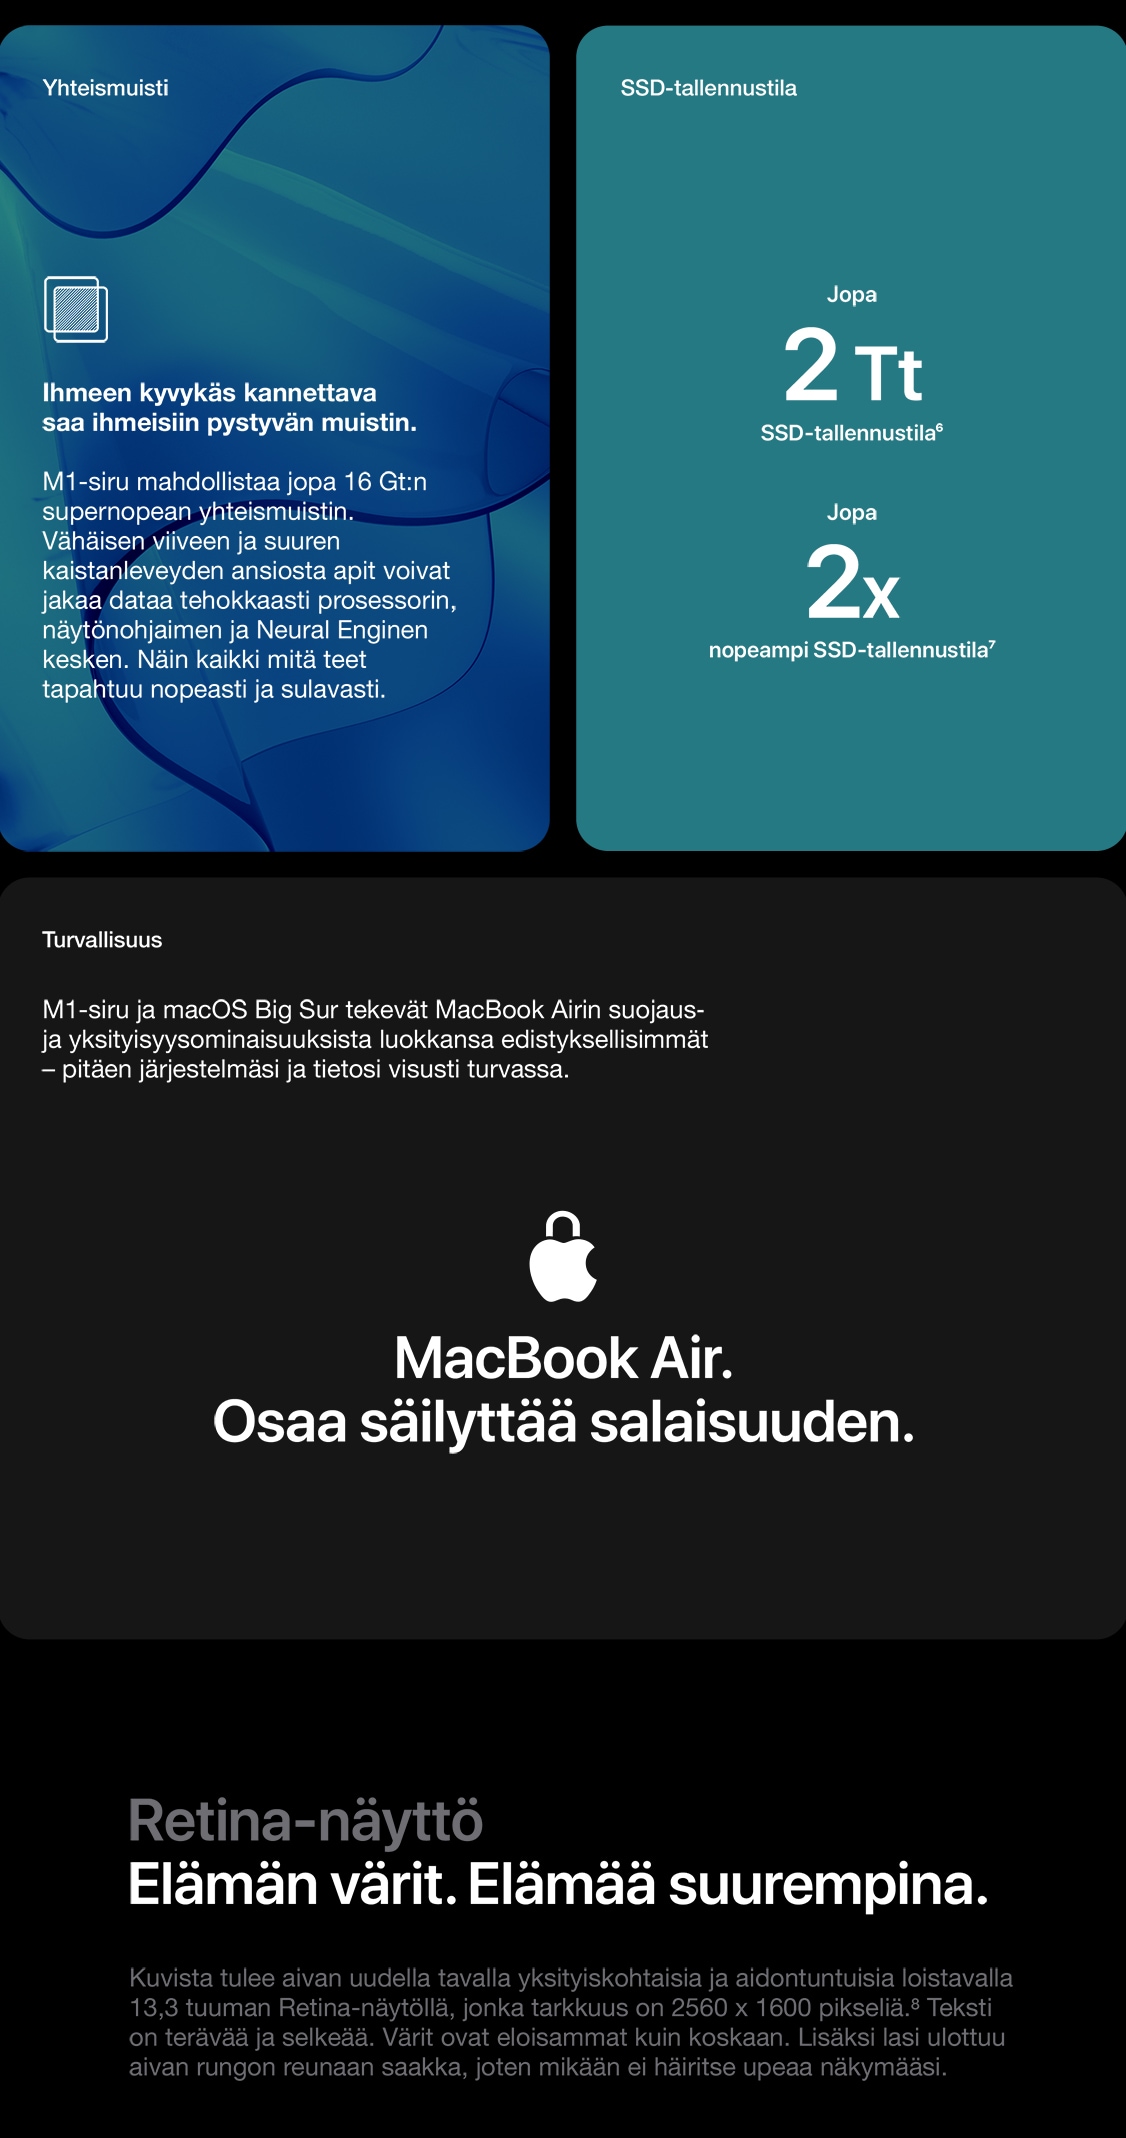 Macbook Air tarjoaa kaiken mitä premium-tason kannettavalta voi odottaa. Ja enemmän. Uudessa Retina-näytössä on silmiinpistävän terävä kuvanlaatu, upea värientoisto ja kirkkaus. 